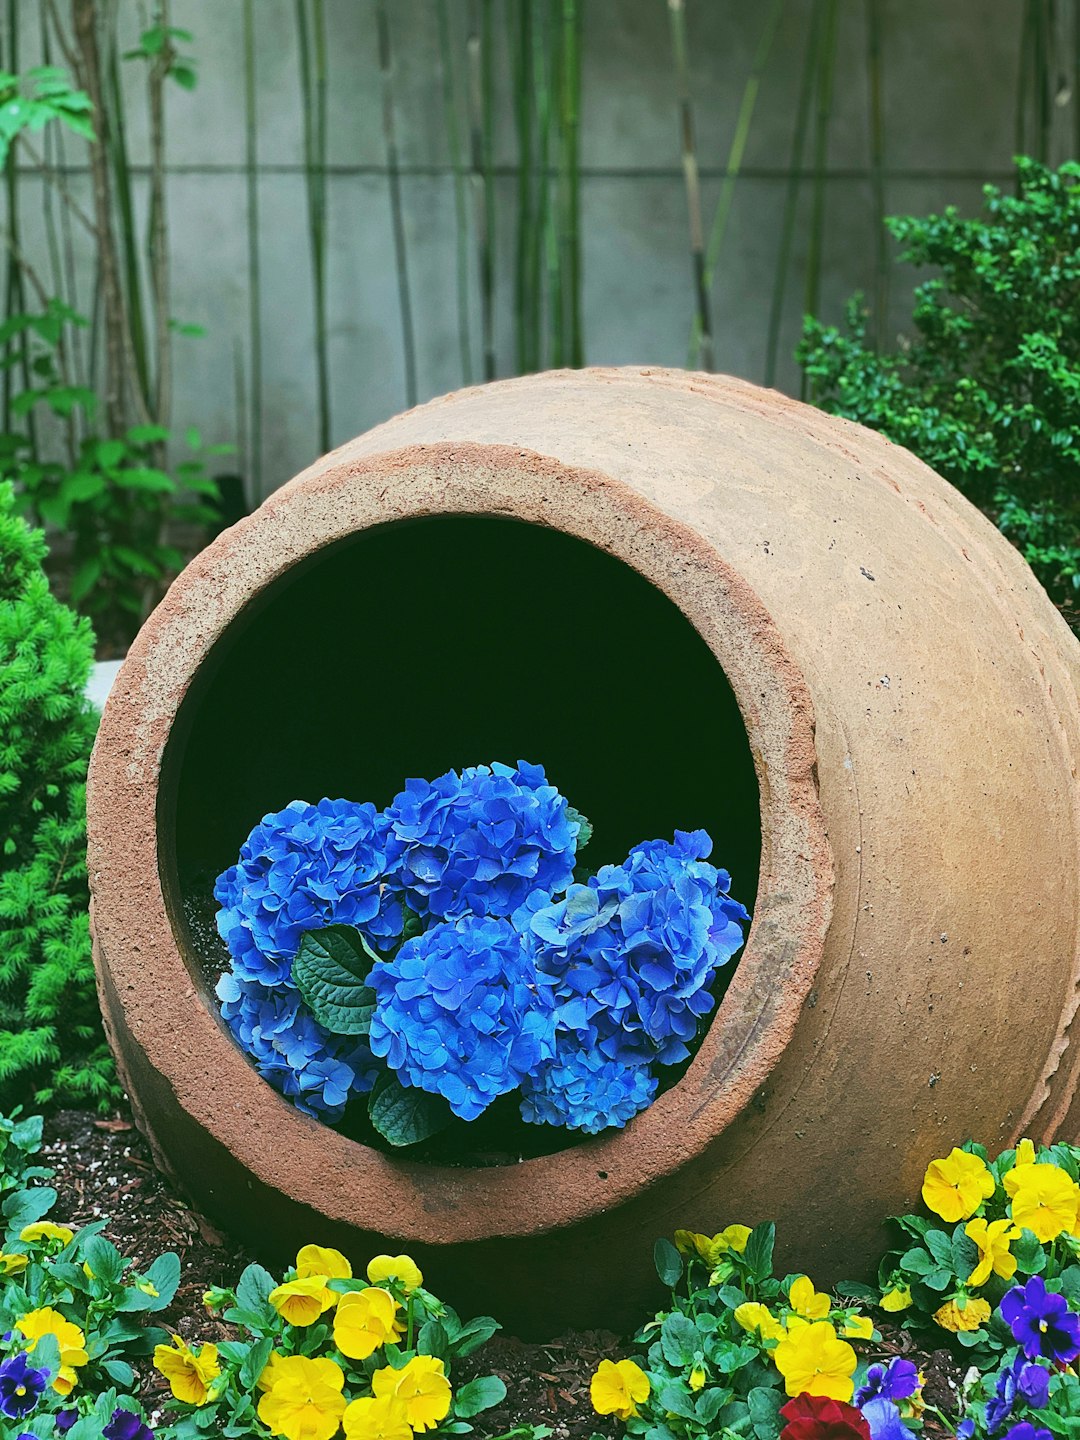 blue hydrangeas in bloom